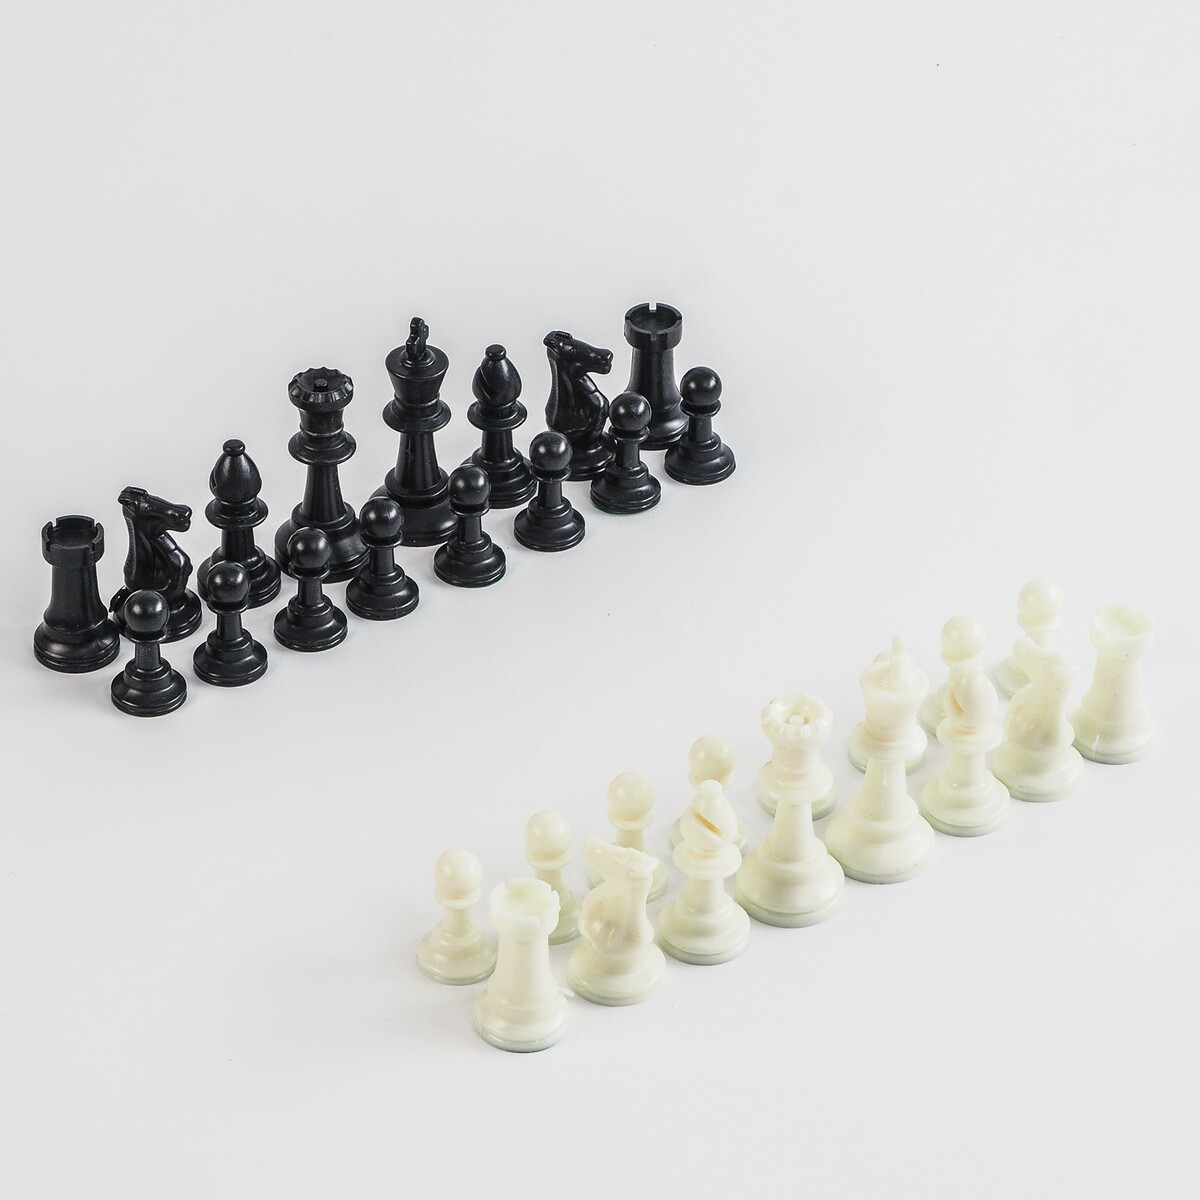 Шахматные фигуры, пластик, король h-7.5 см, пешка h-3.5 см датский король